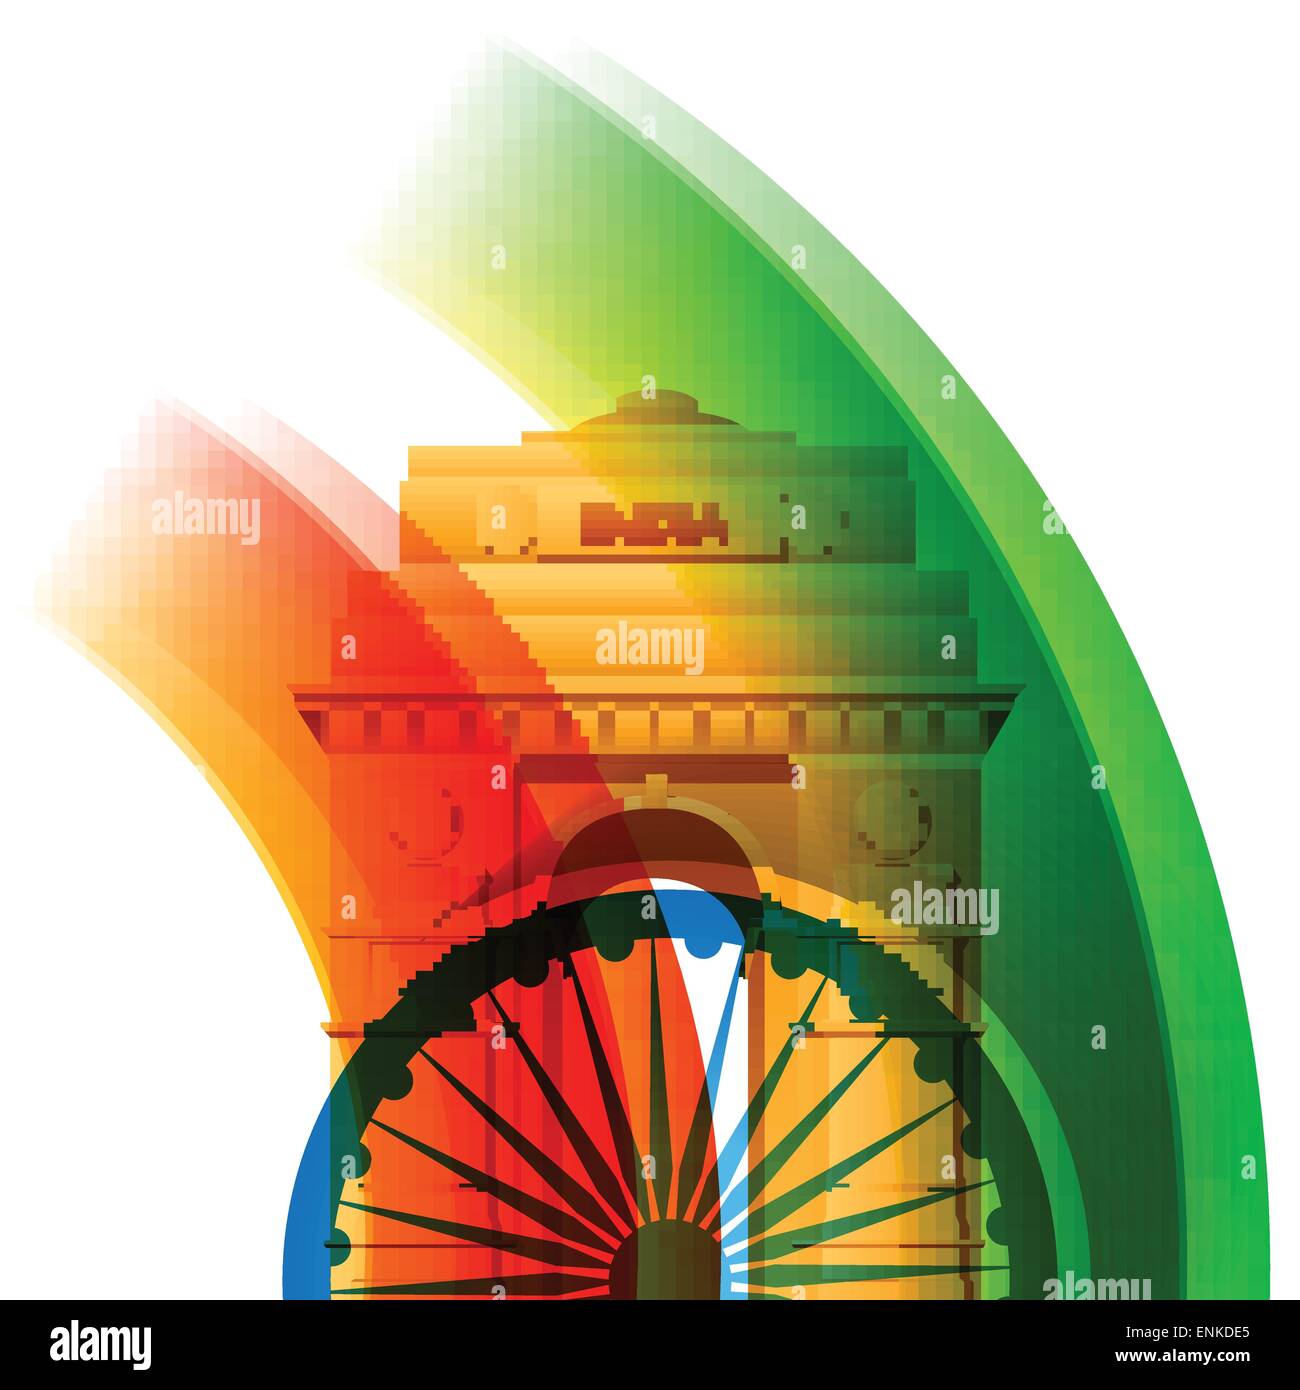 beautiful stylish indian flag background design Stock Vector Image & Art -  Alamy